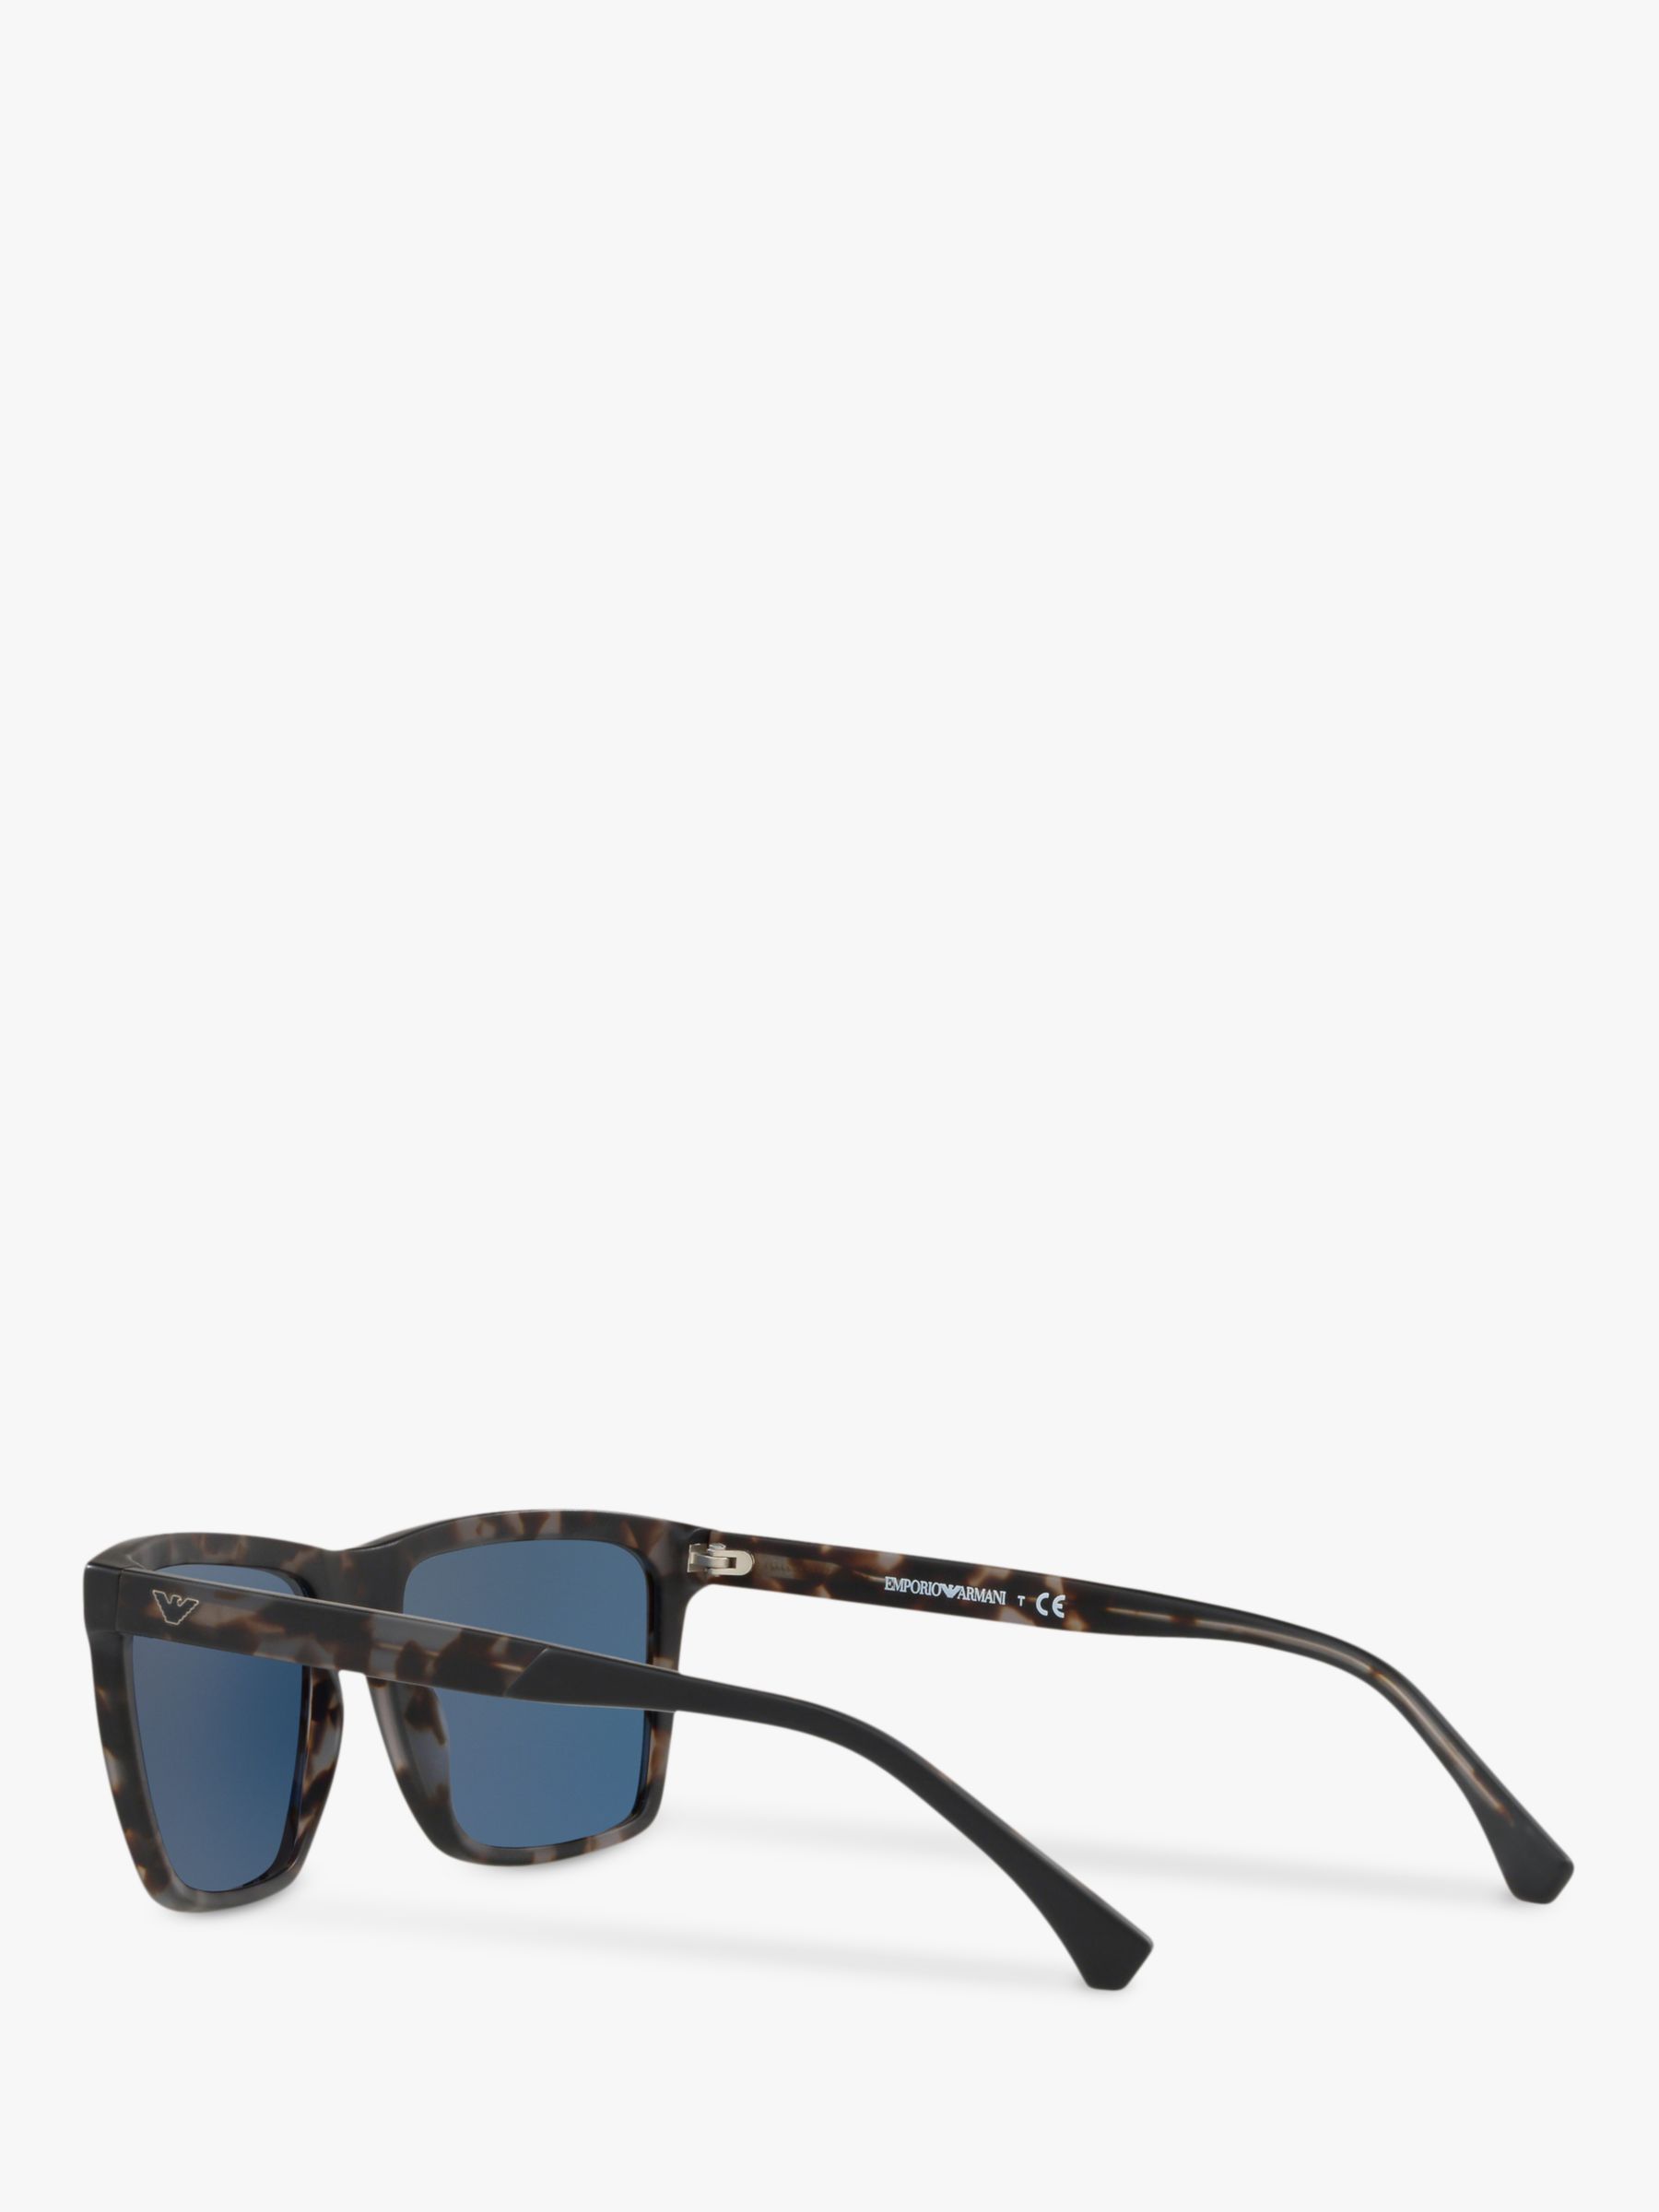 Emporio Armani EA4117 Men's Square Sunglasses, Matte Grey/Blue